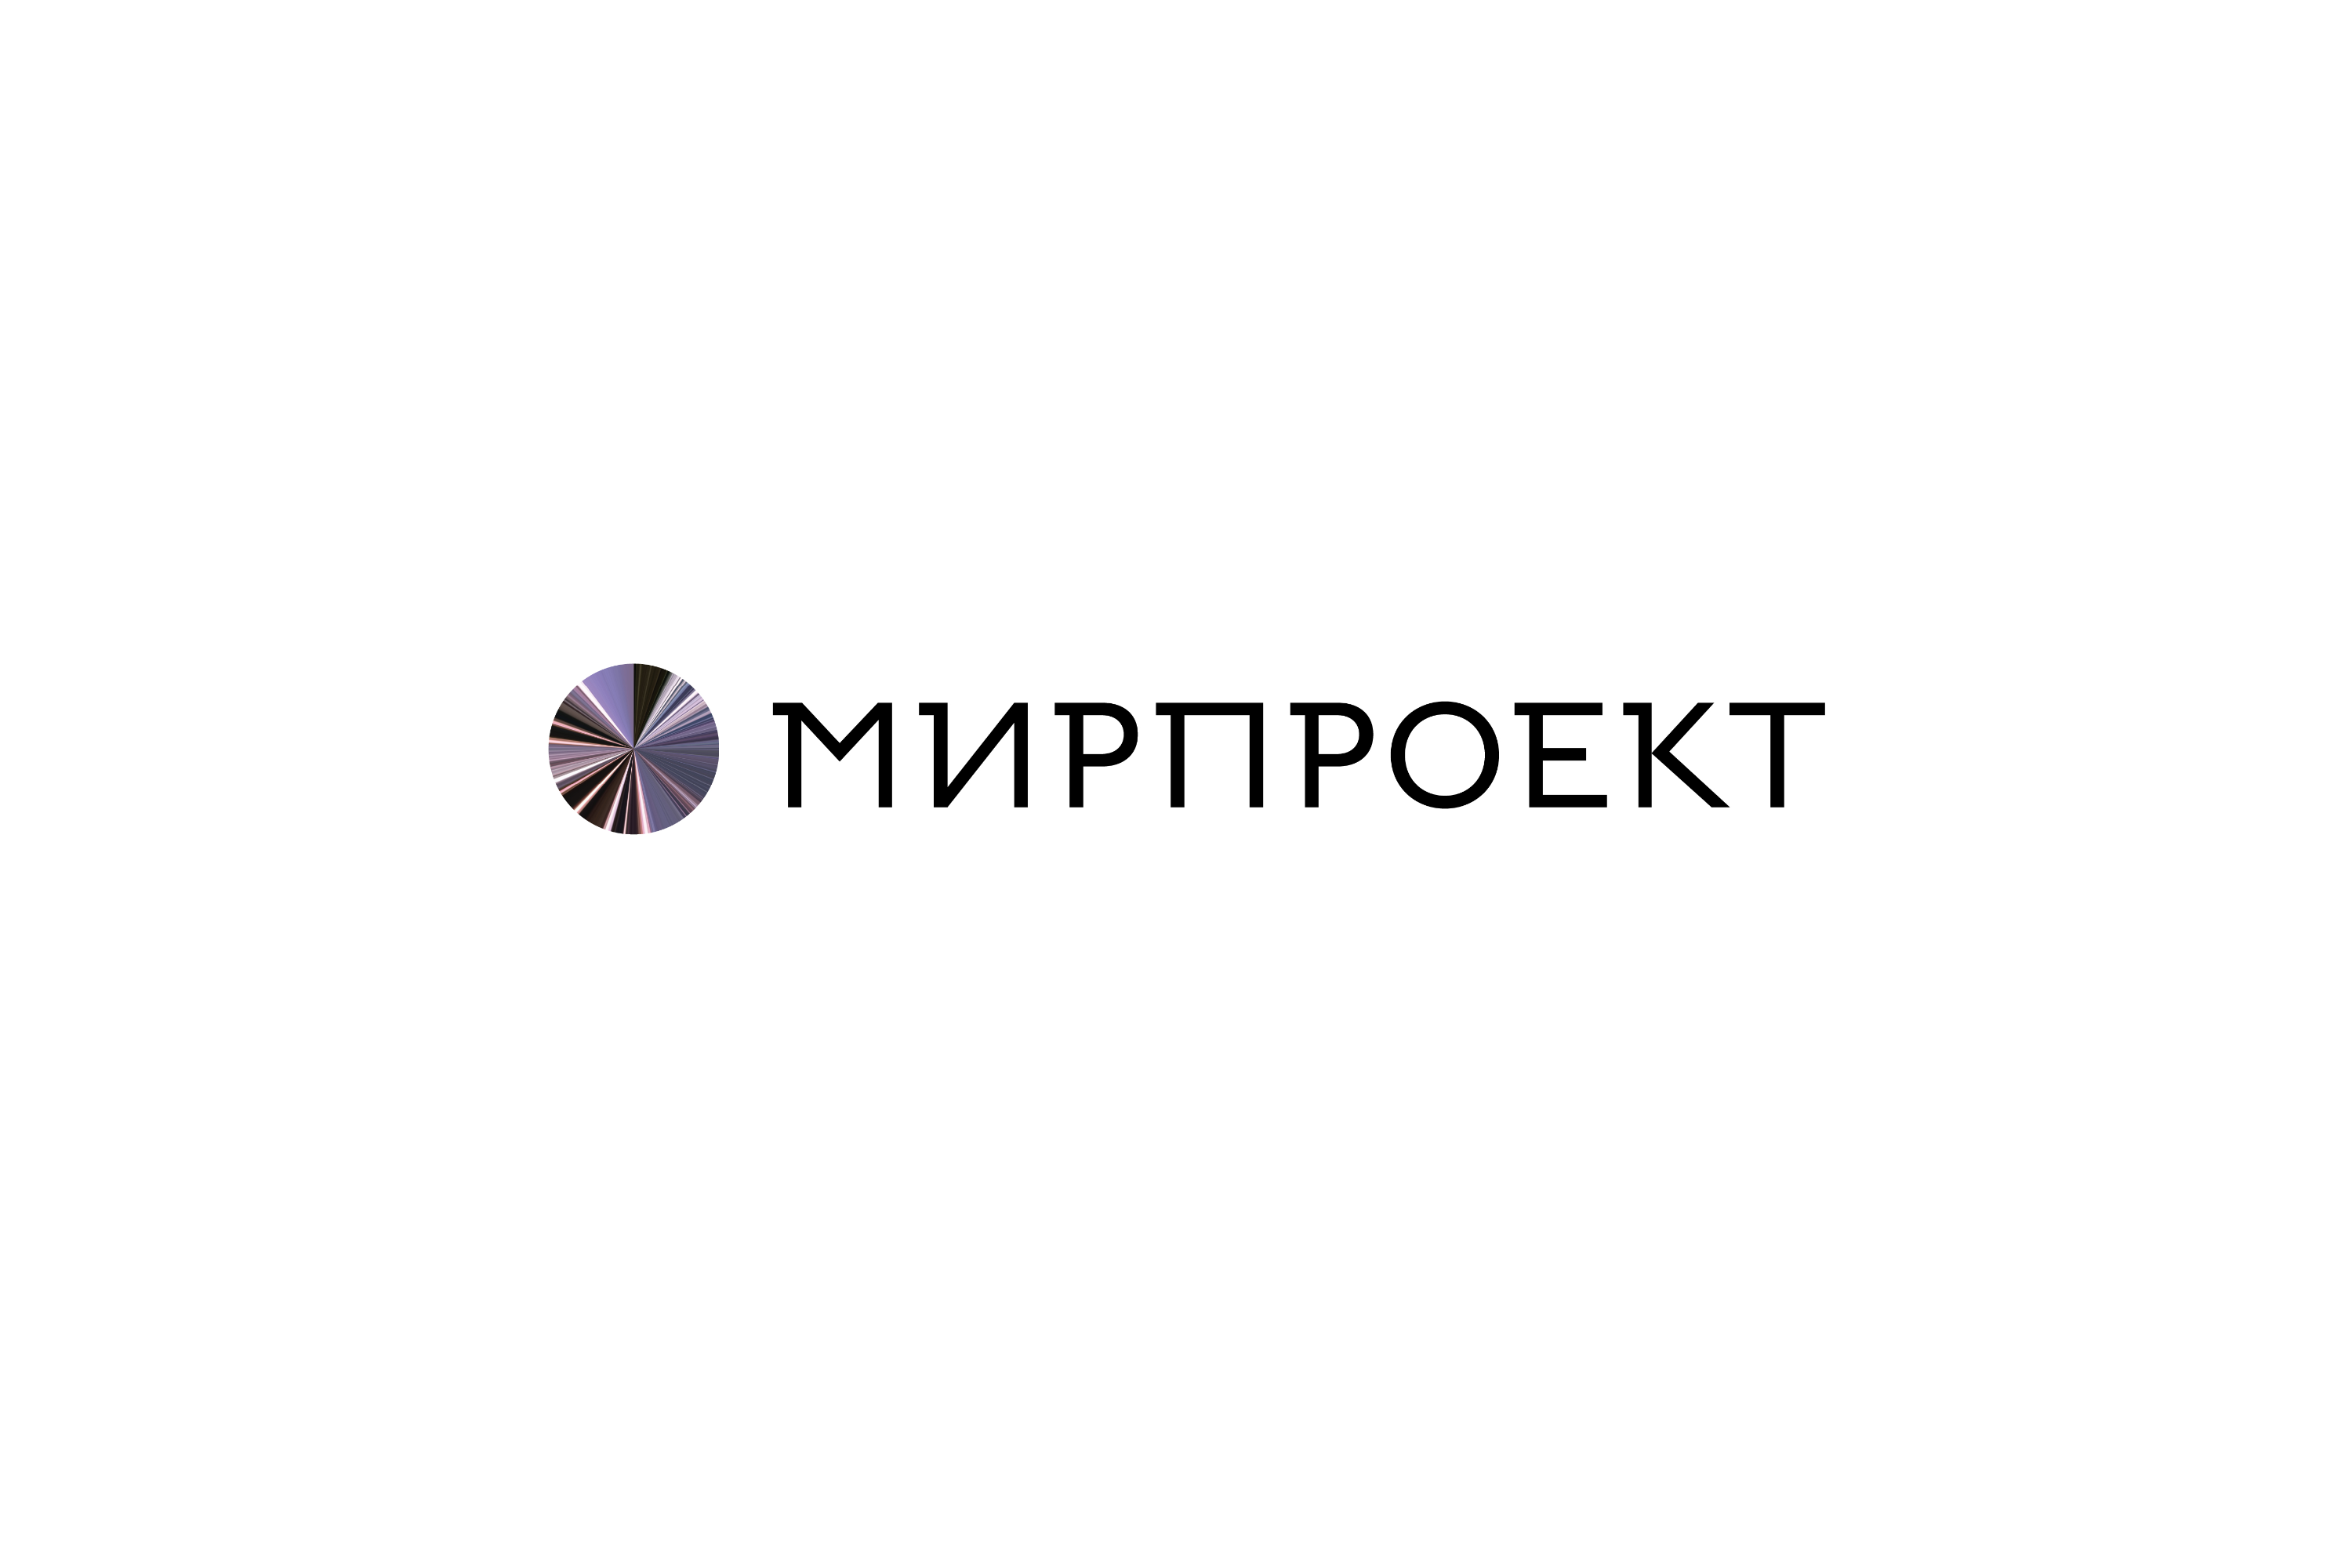 mirproekt logo 01